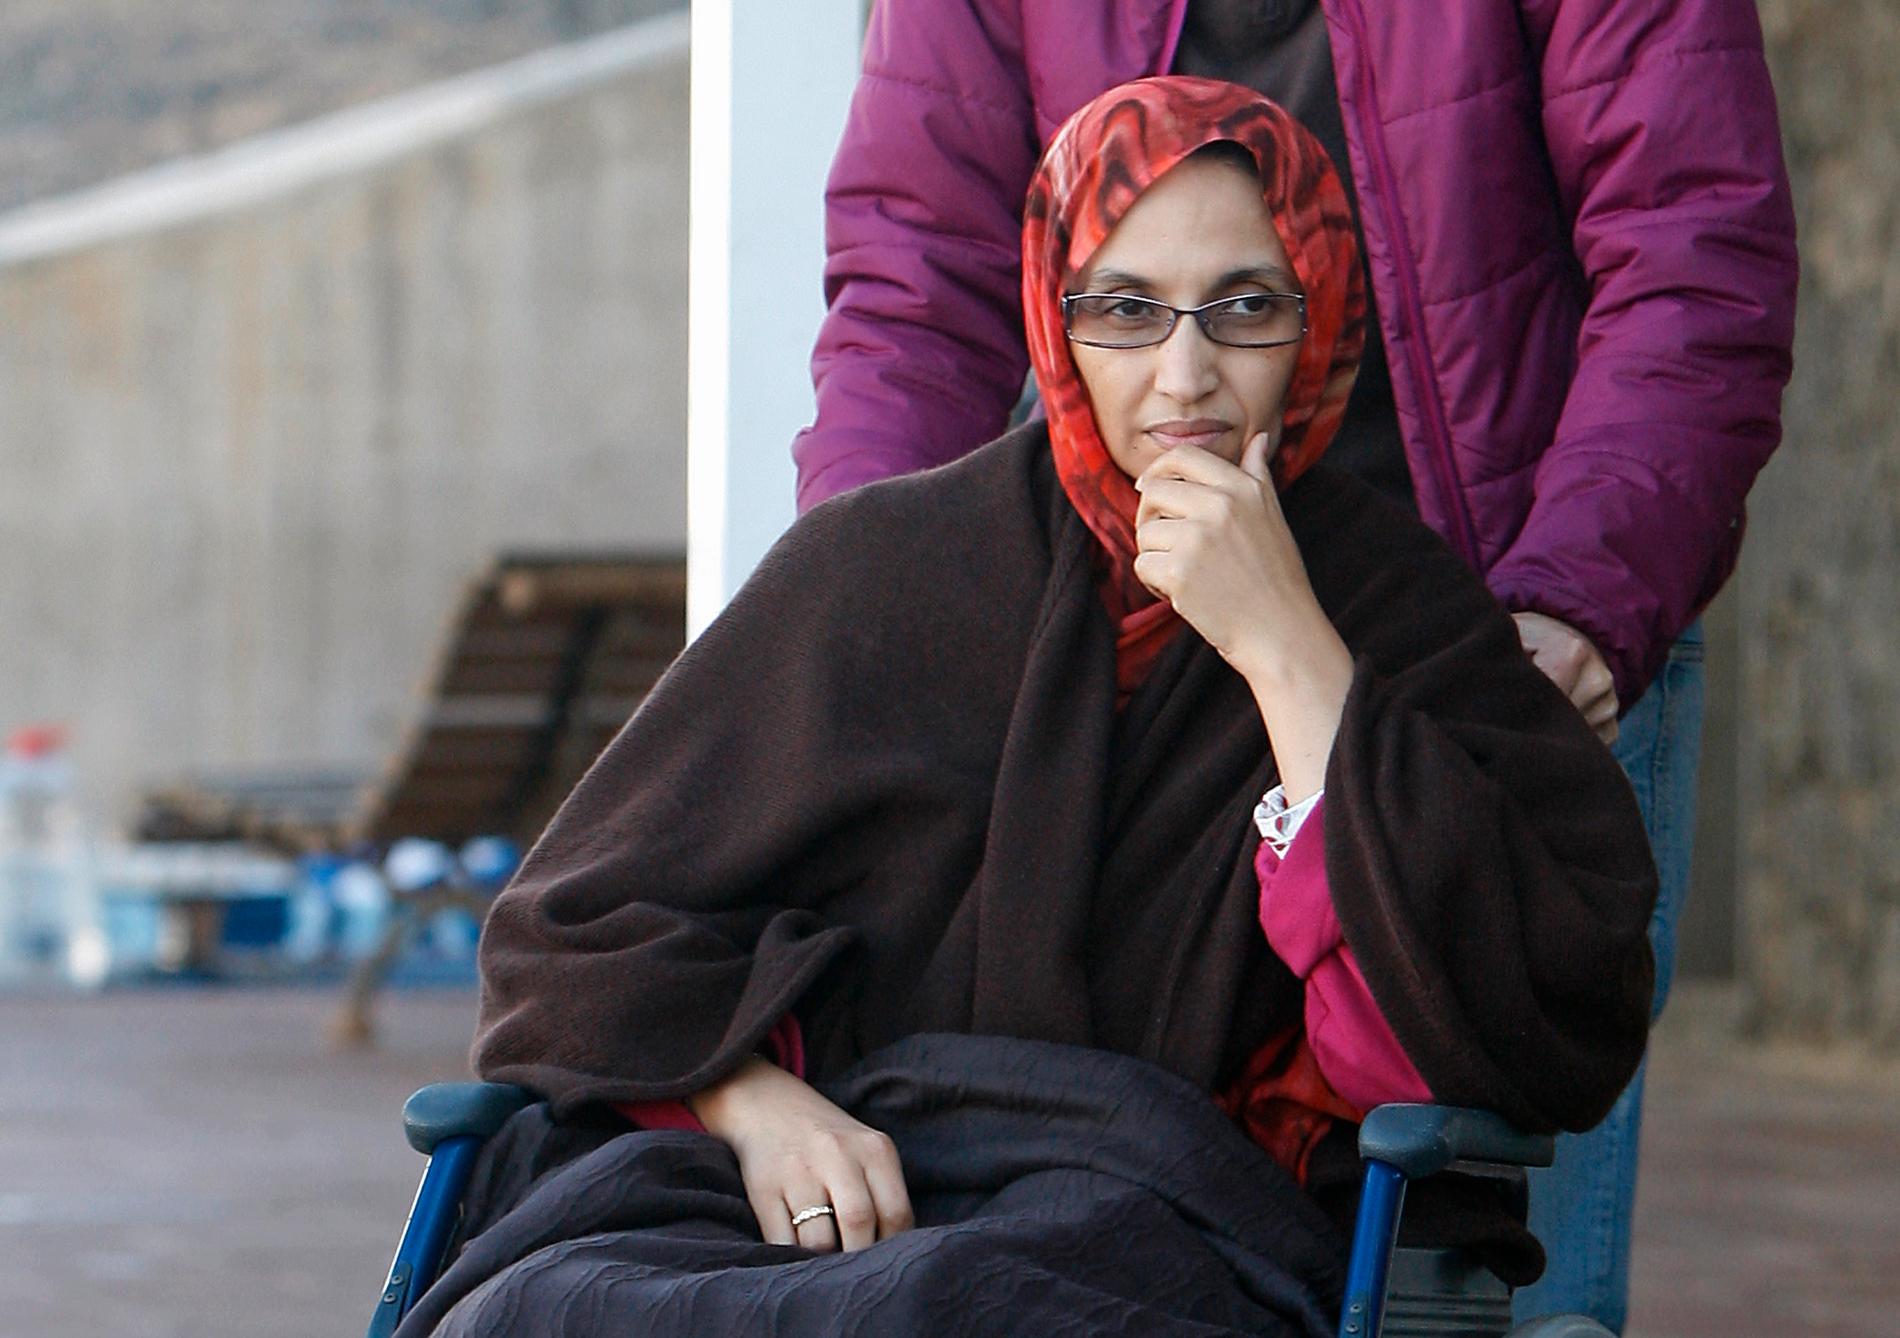 Aminatou Haidar, från Västsahara, hungerstrejkade i tre veckor 2009 på en flygplats i Spanien. Marockanska myndigheter släppte inte in henne i Västsahara eftersom hon inte ville uppge sin nationalitet som marockansk.